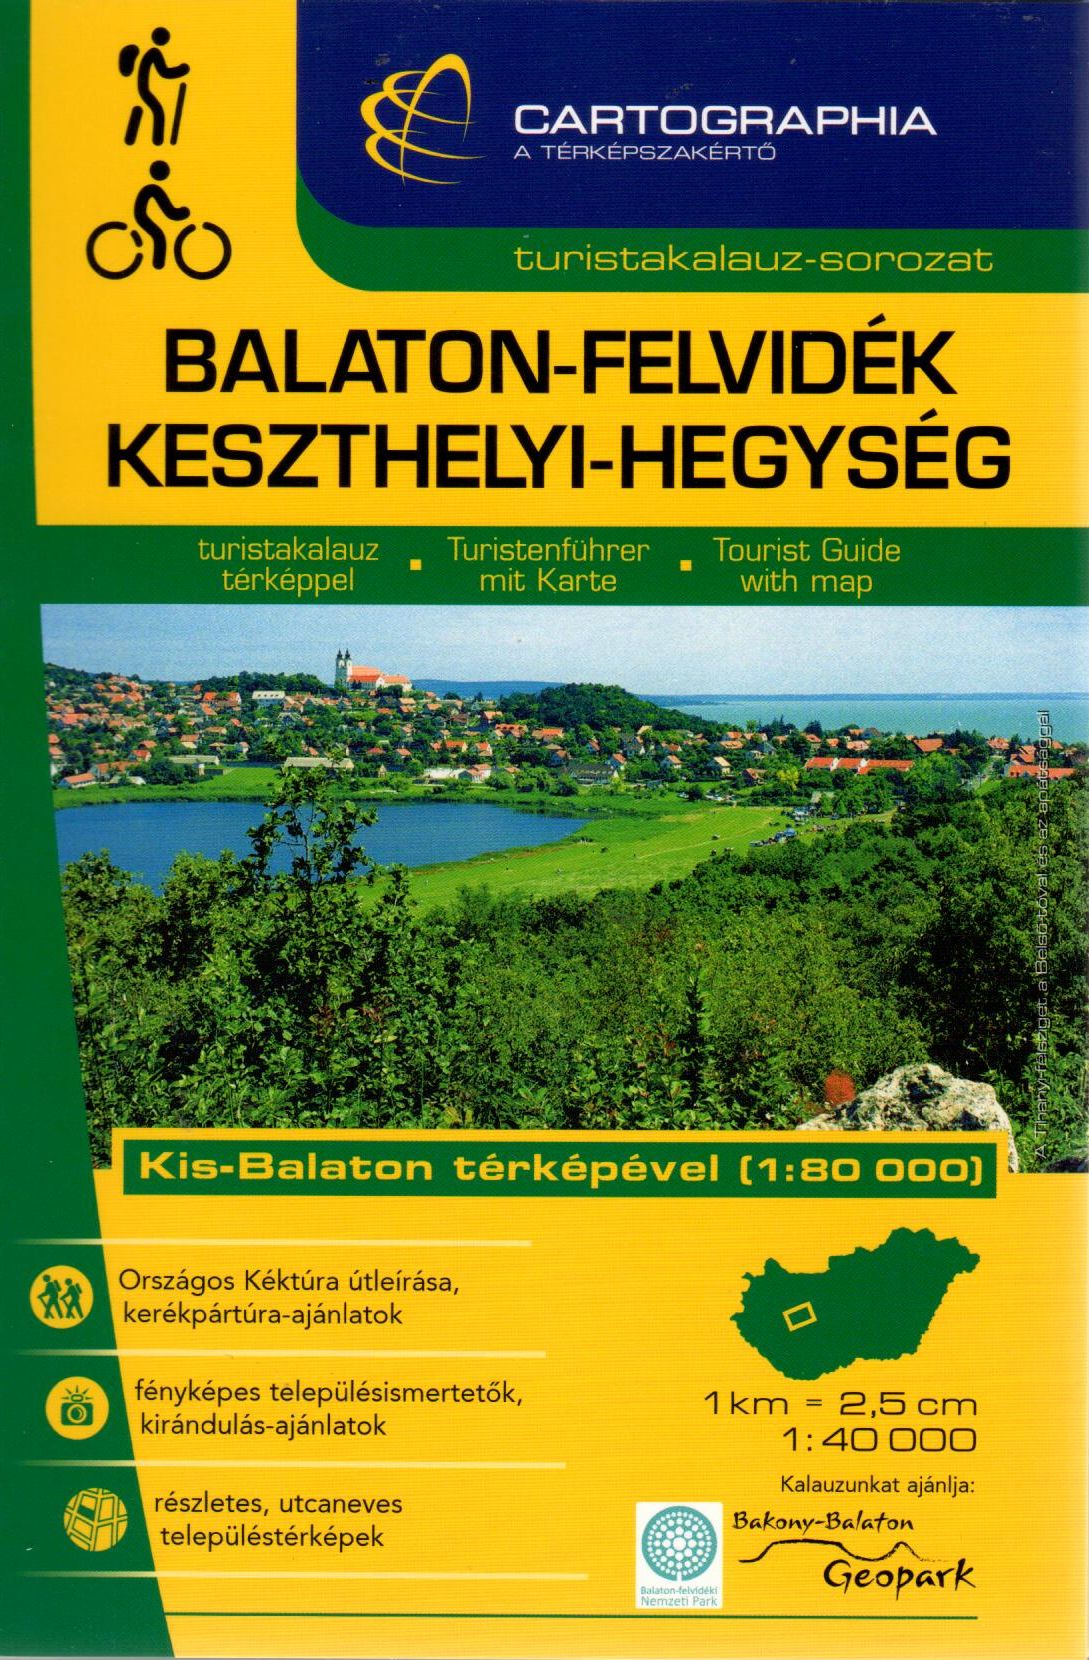 Including city maps:  Balatonalmádi, Balatonfüred, Hévíz, Keszthely, Nagyvázsony, Sümeg, Tapolca, Tihany.